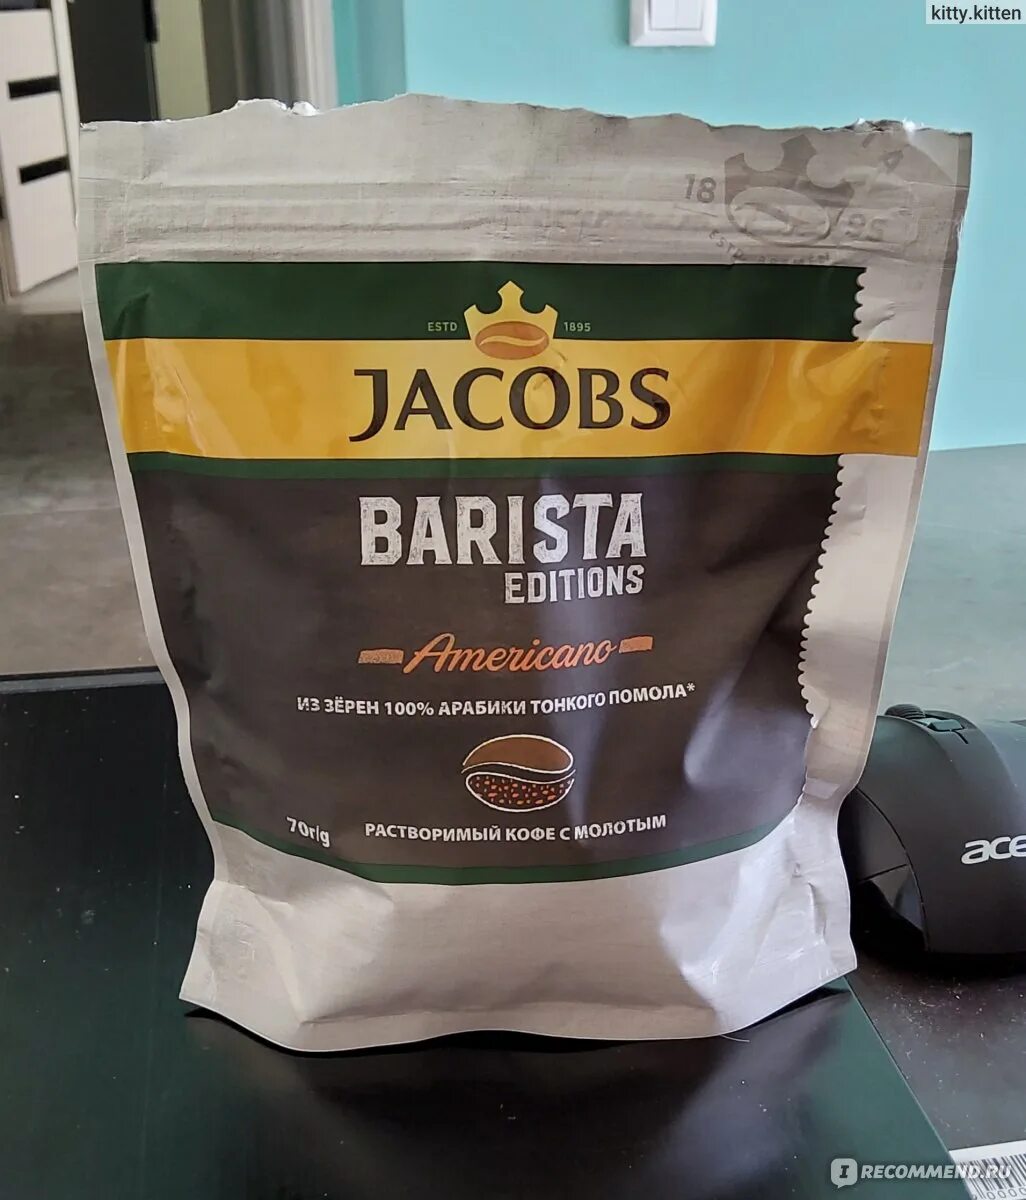 Кофе якобс бариста. Jacobs Barista Editions. Jacobs Barista Edition americano. Кофе Якобс бариста растворимый.